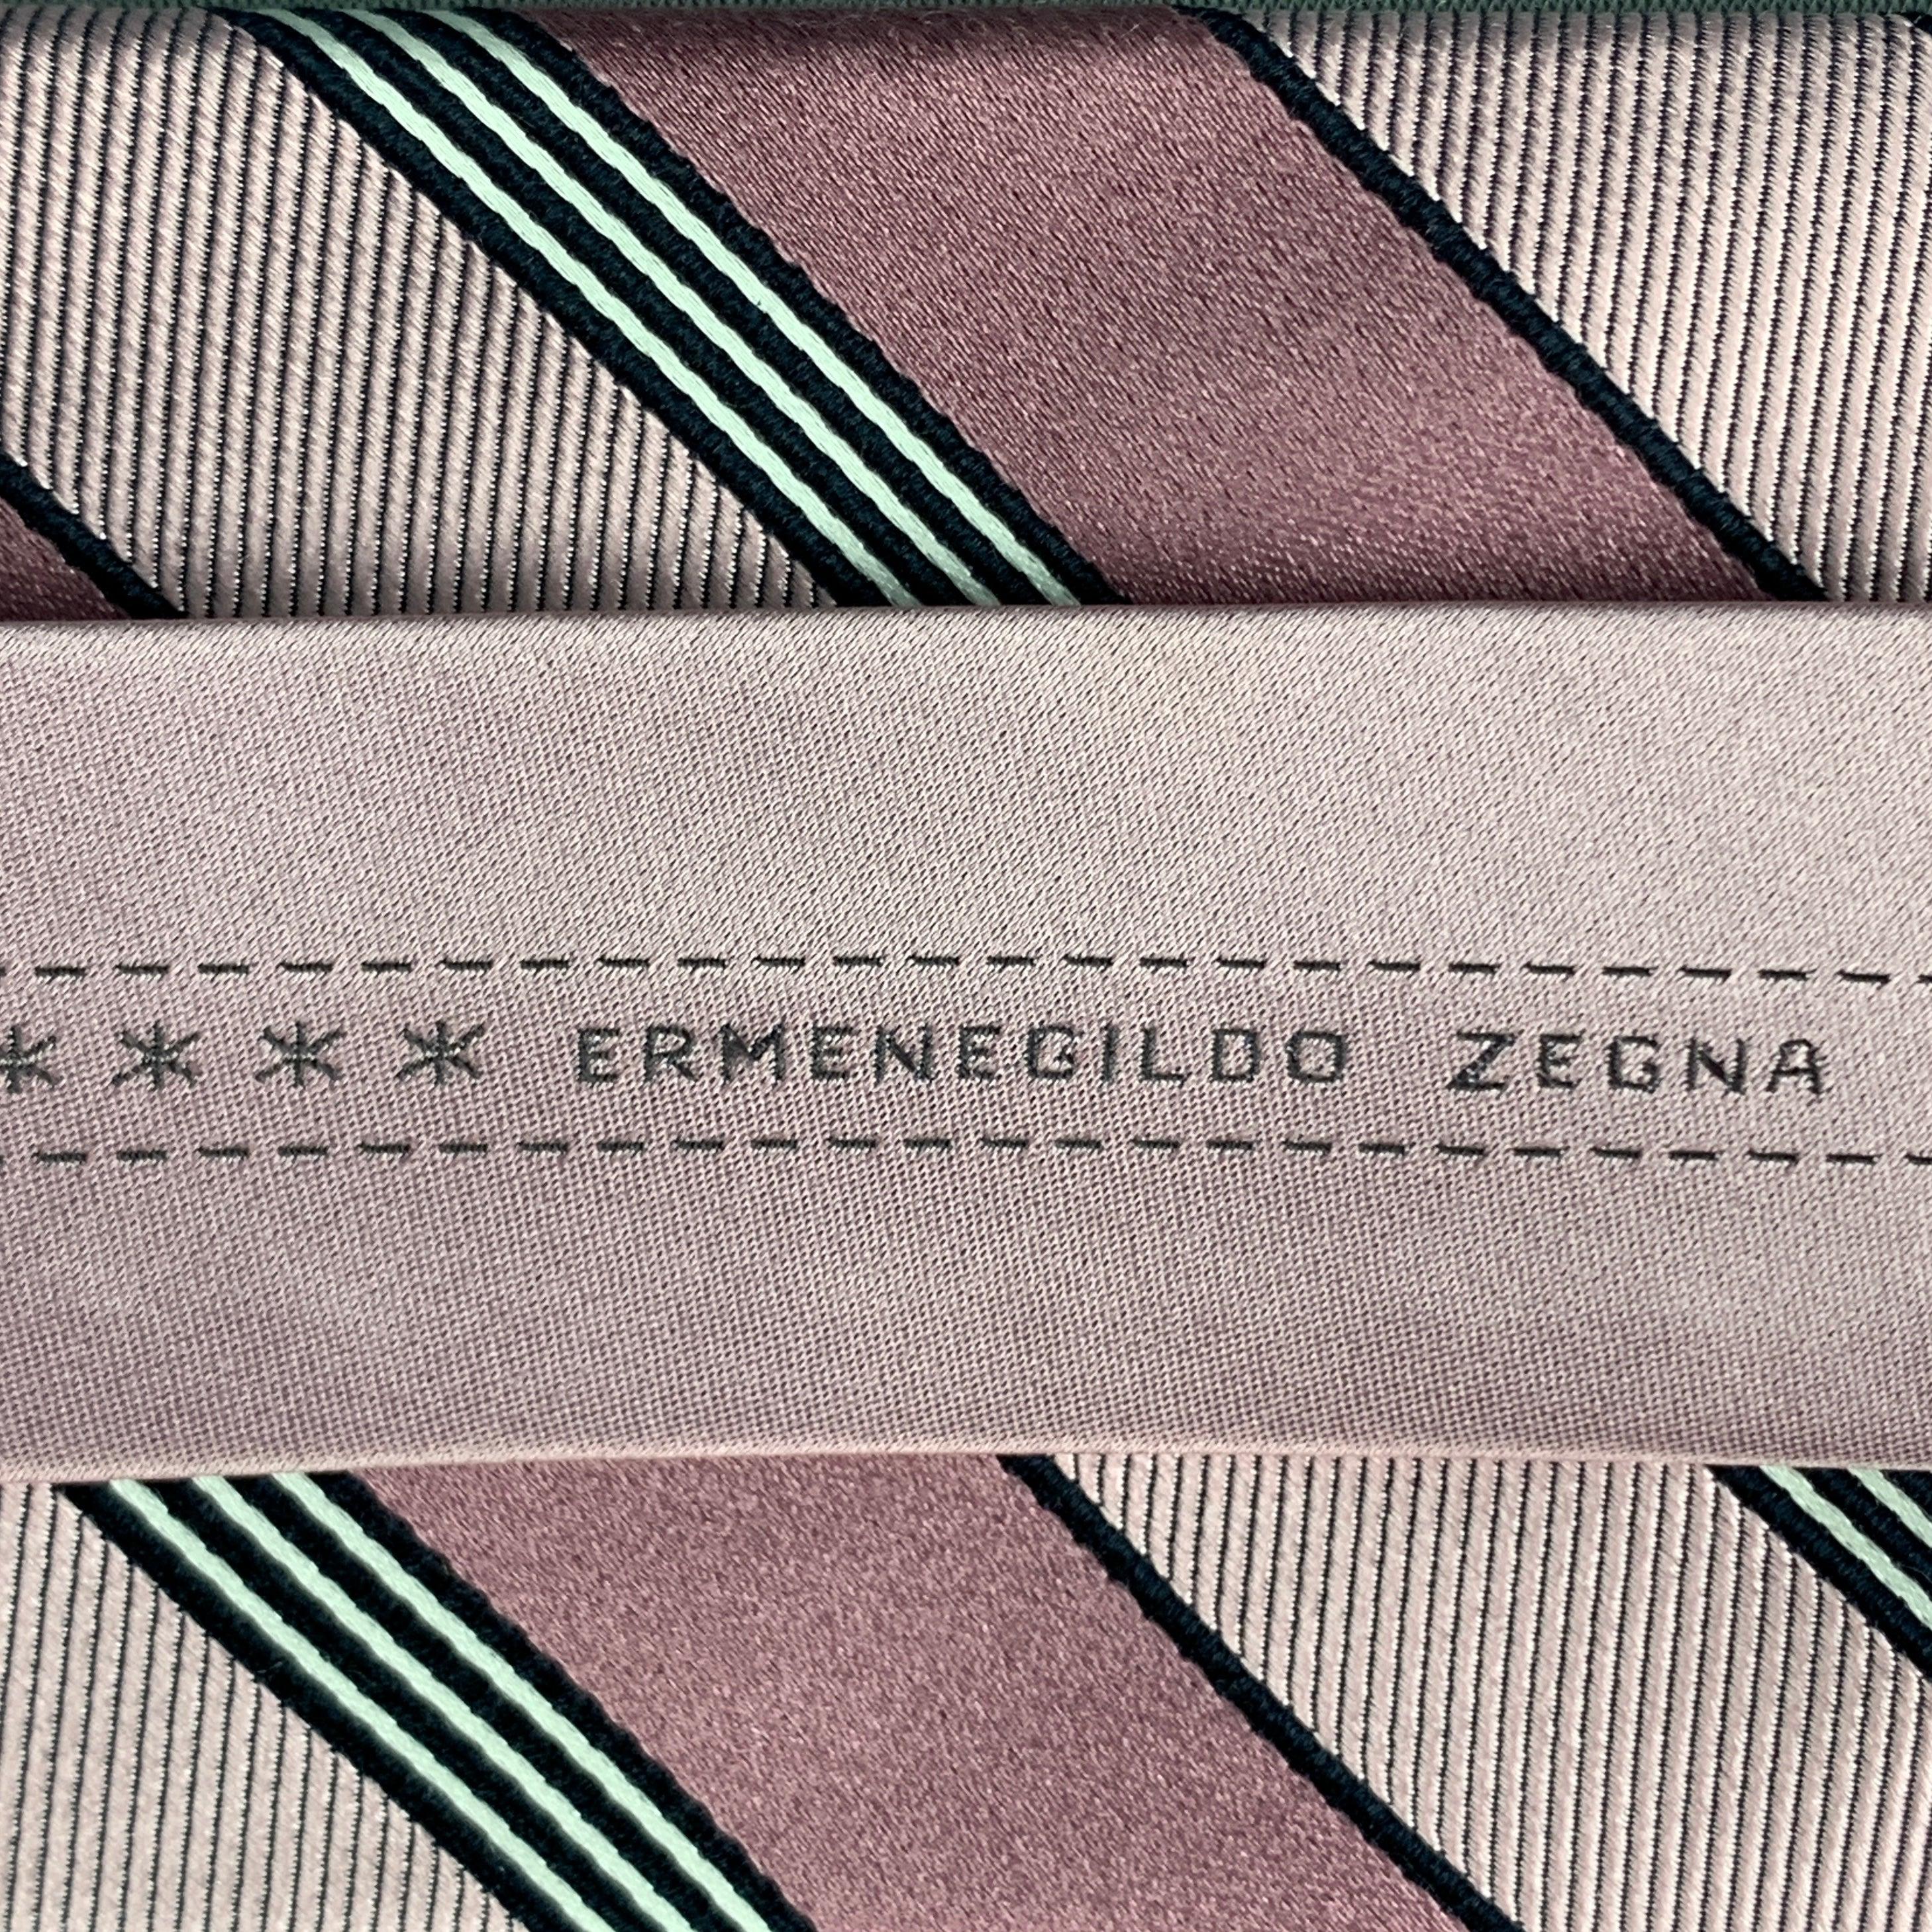 Cravate vintage ERMENEGILDO Zegna rose à rayures diagonales noires. 100% soie. Fabriquées en Italie.
Très bon état d'origine.
 

Mesures : 
  Largeur : 3 pouces Longueur : 60 pouces 


  
  
 
Référence : 124758
Catégorie : Cravate
Plus de détails
 